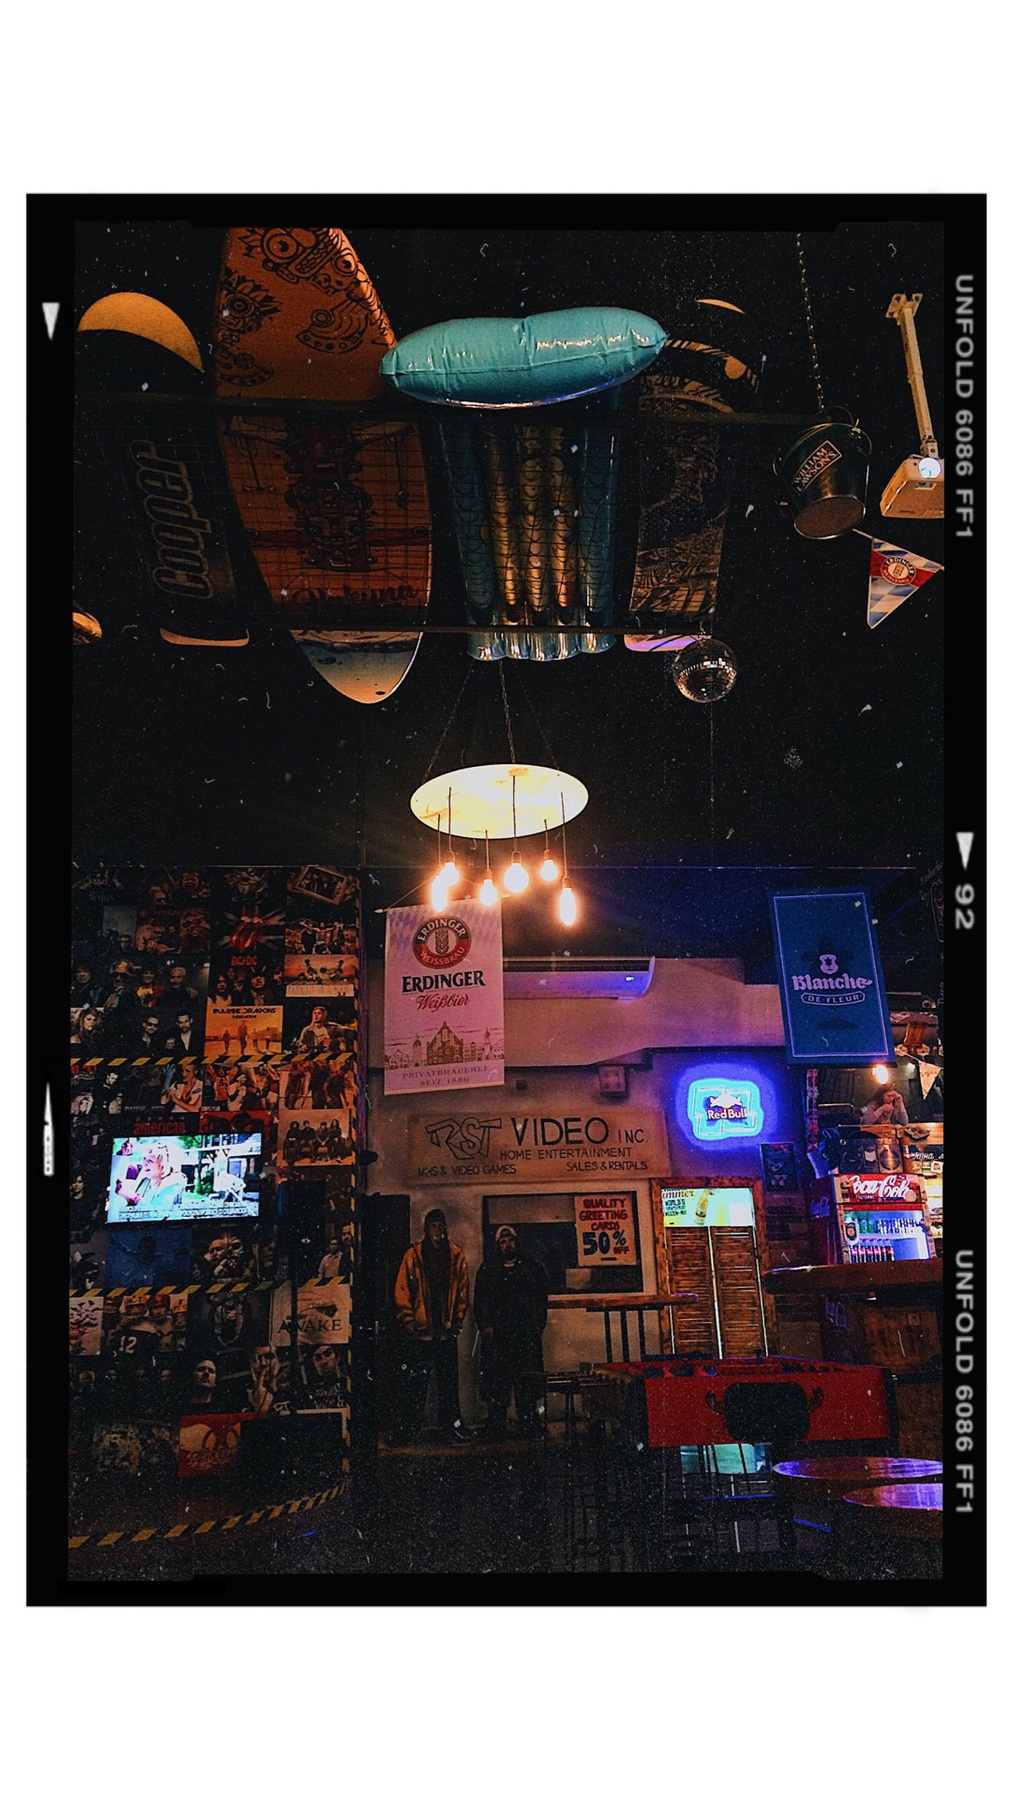 Hakuna Matata Bar Мобильное фото бар заведение рок н ролл фильм